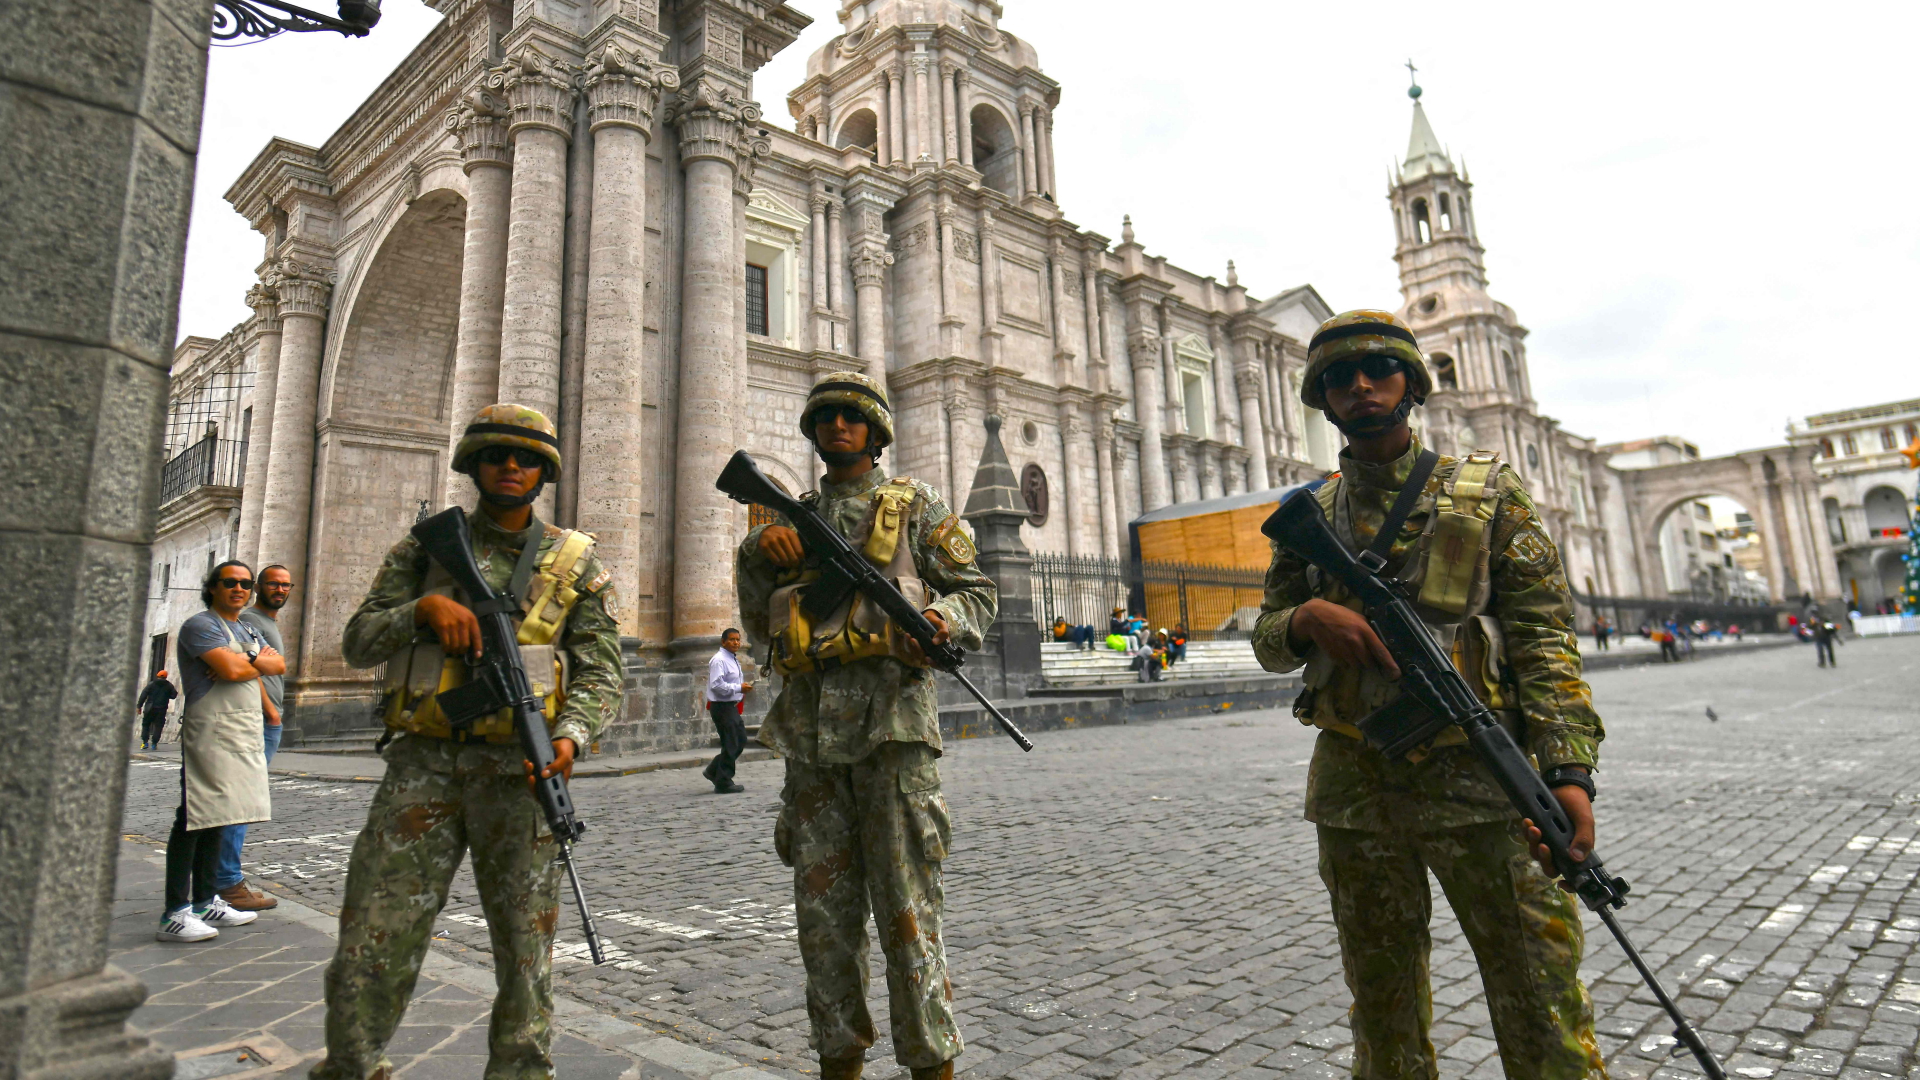 Militär patrouilliert im peruanischen Arequipa | AFP